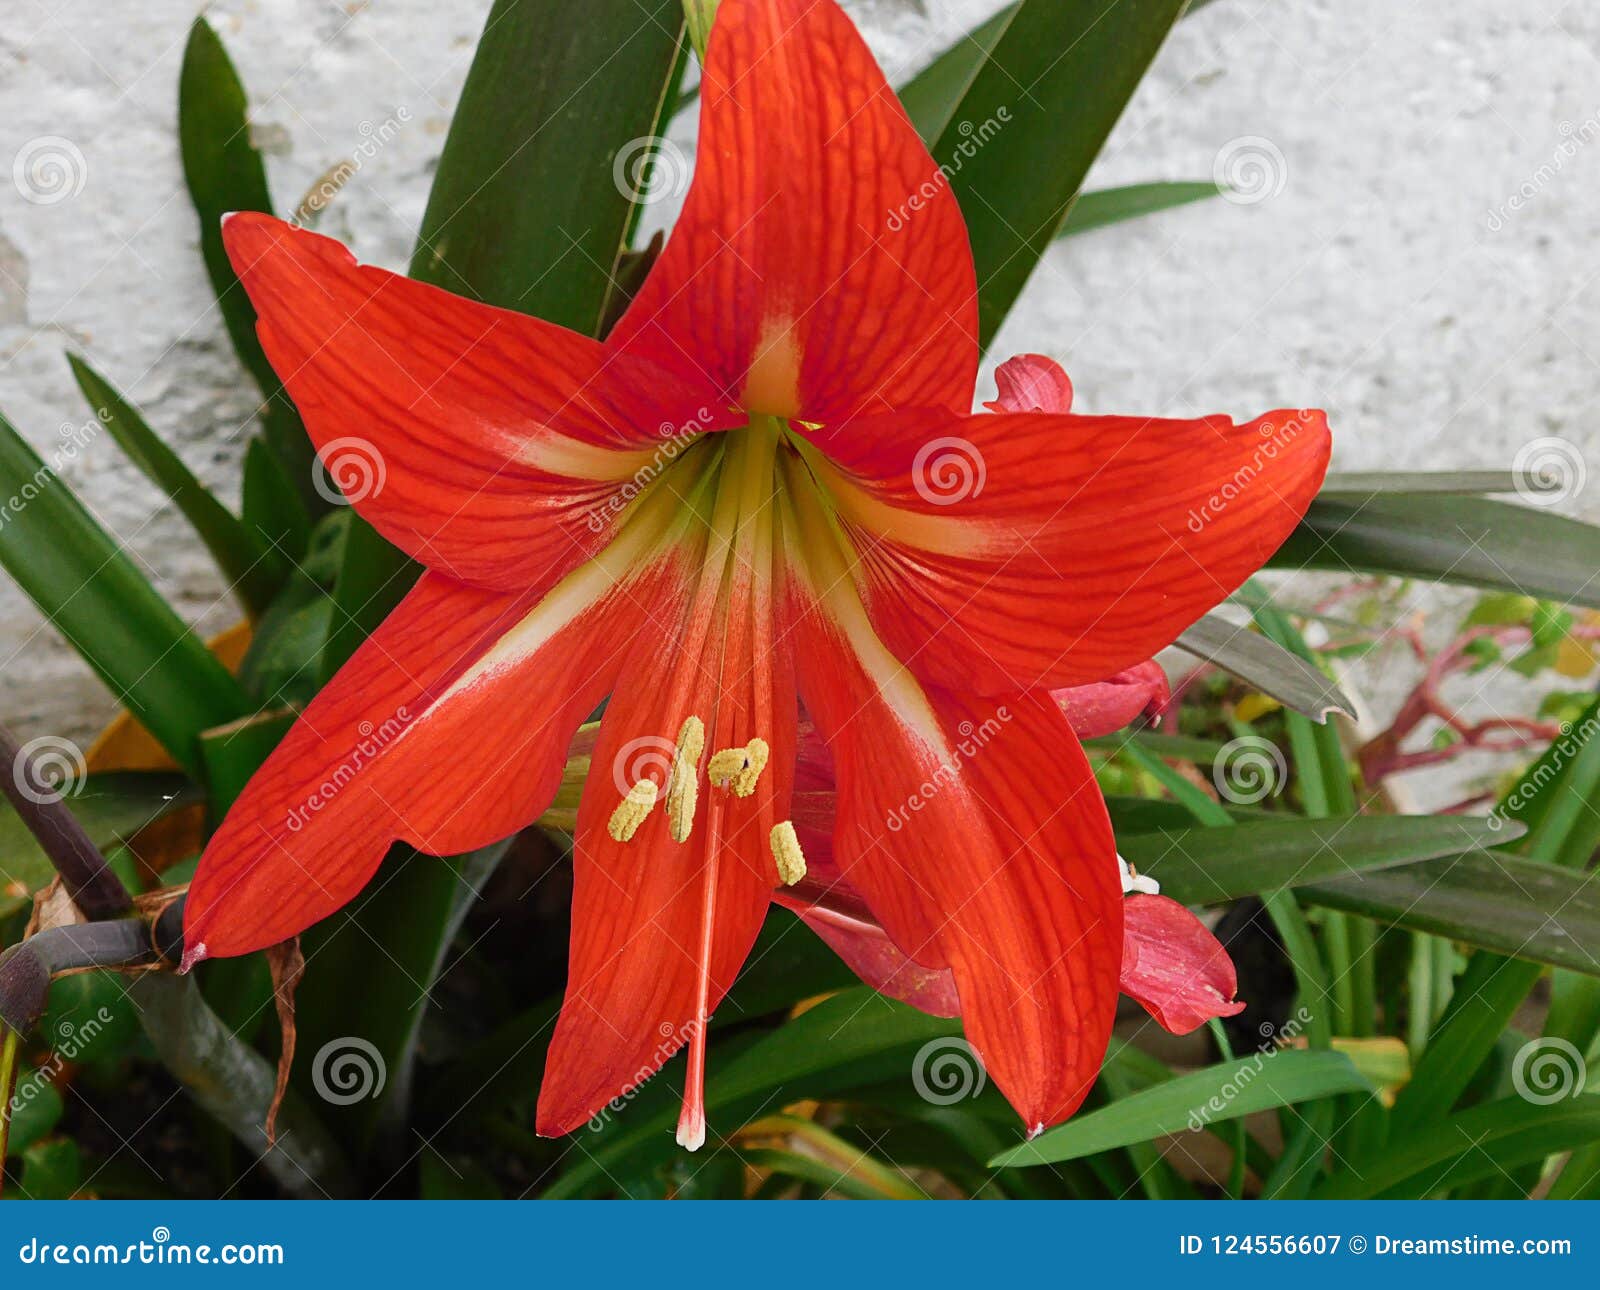 Flor Roja De Azucena Que Embellece Los Jardines Imagen de archivo - Imagen  de texturas, colores: 124556607